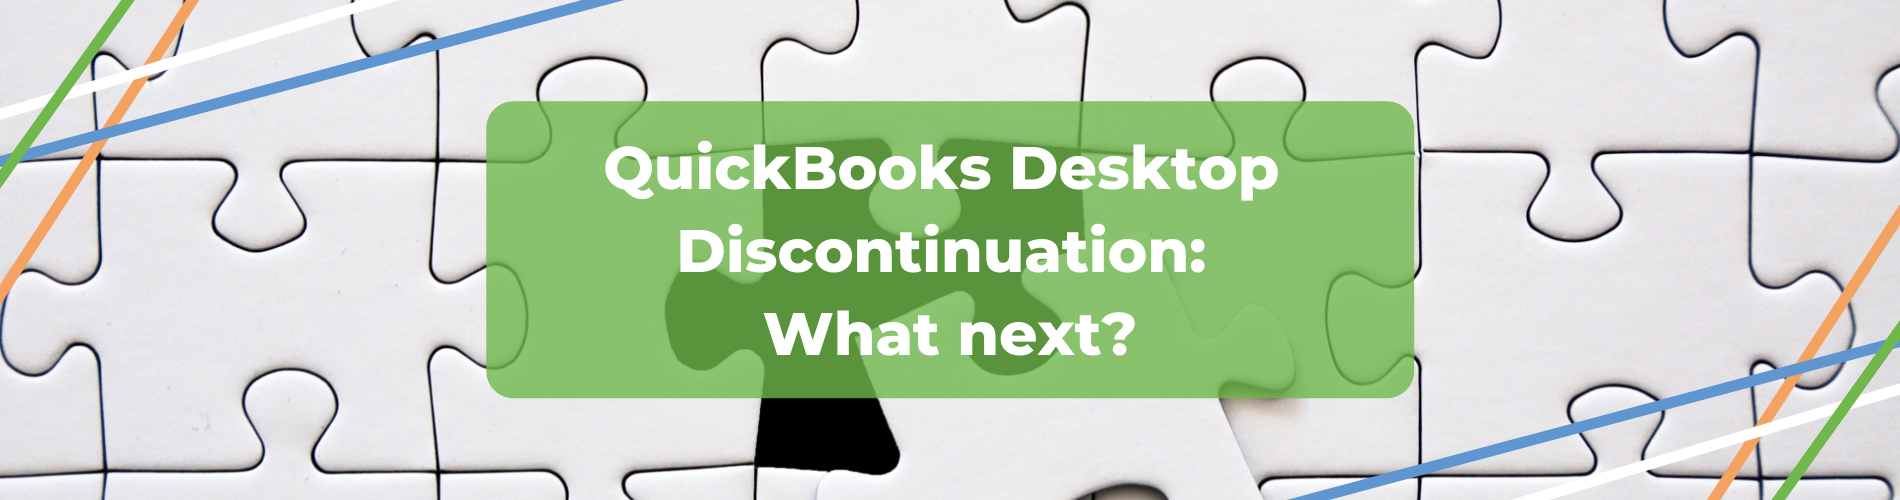 quickbooks discontinuation header